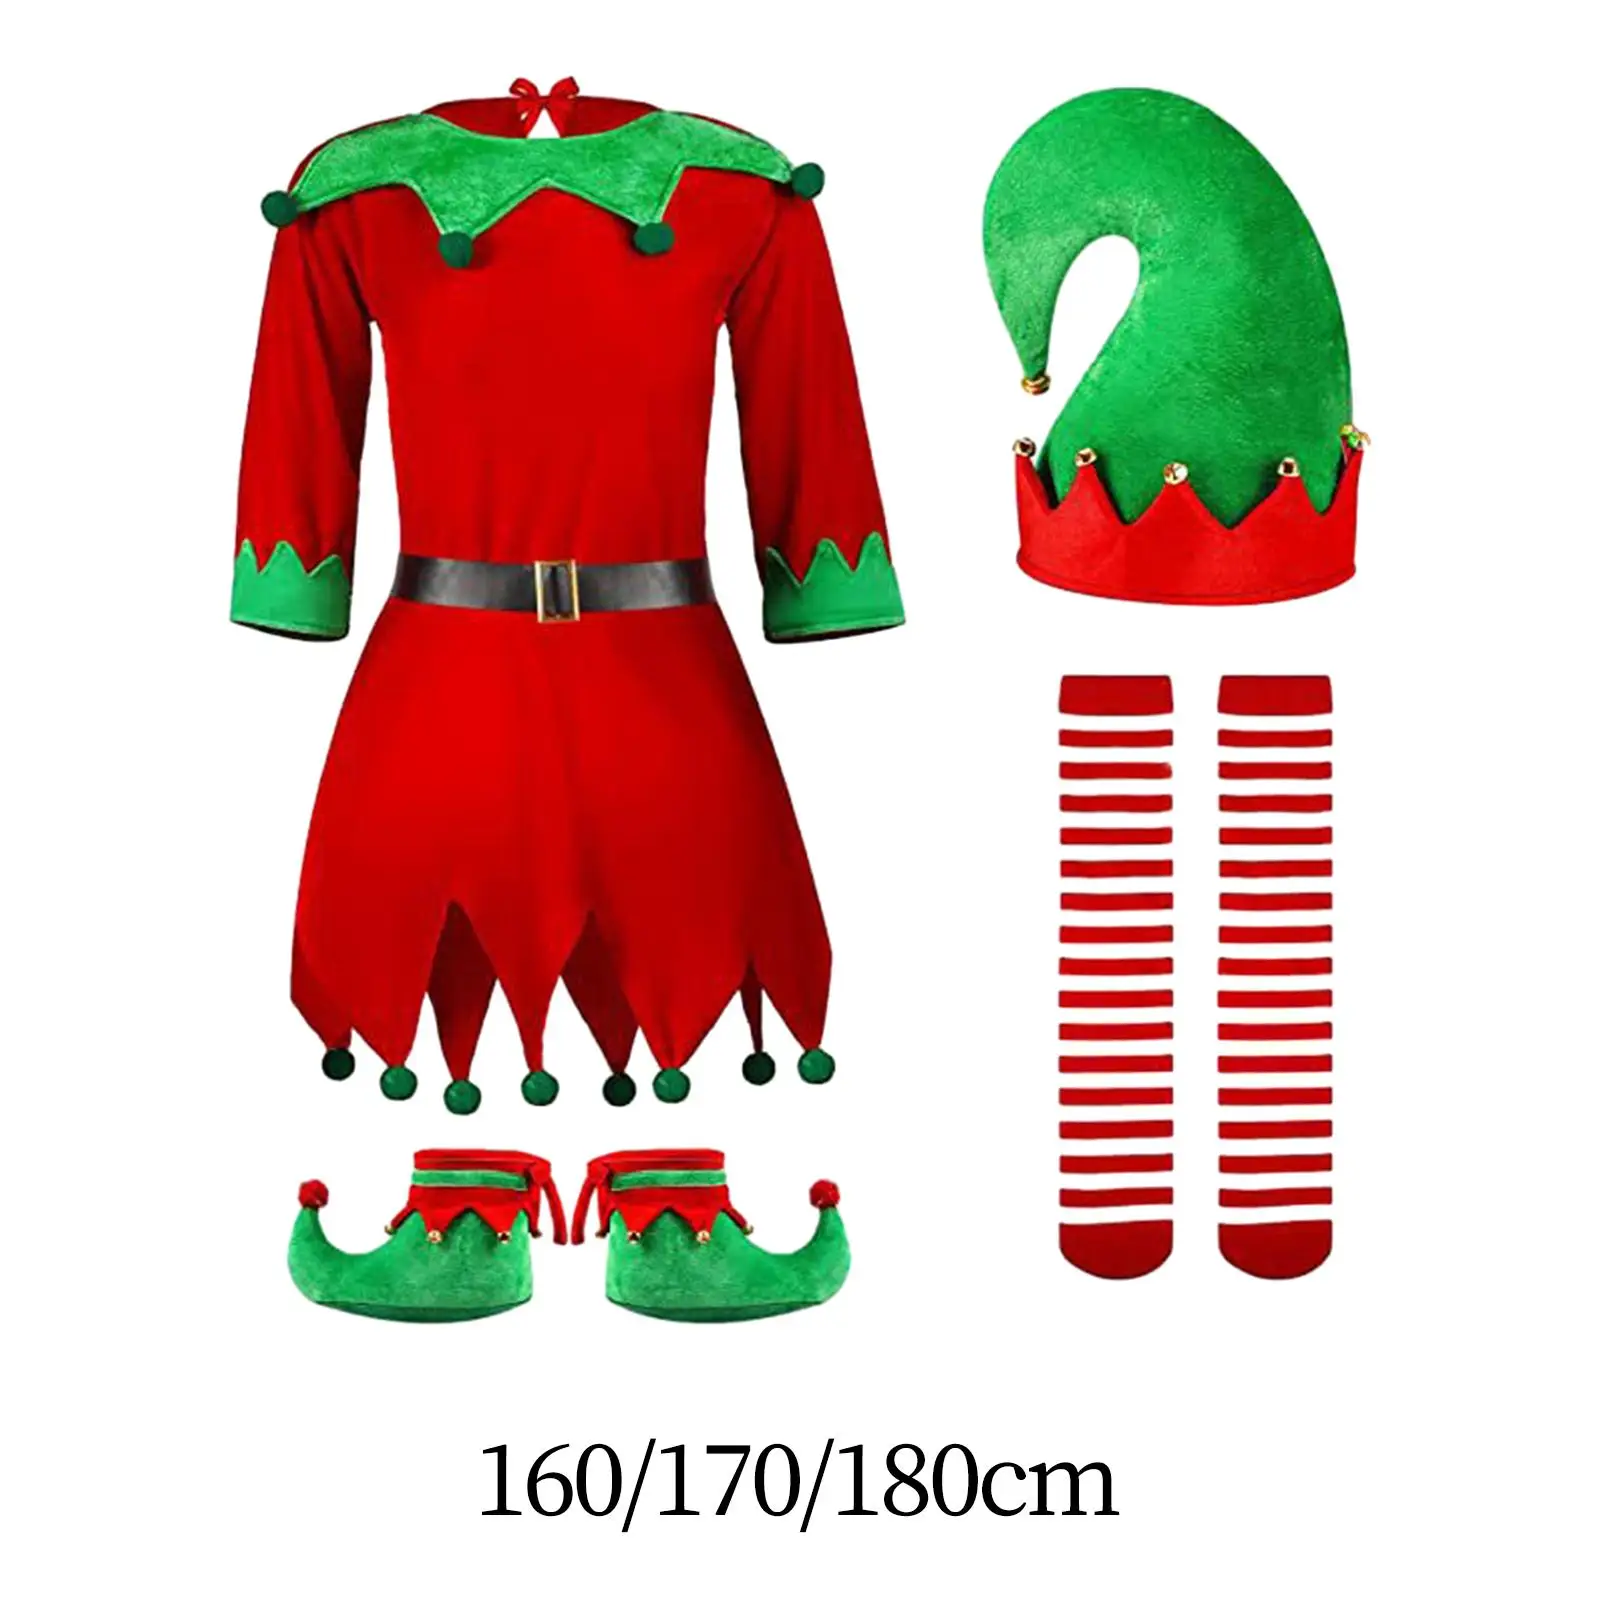 

Женский Рождественский костюм Elf с шапкой, нарядное платье для взрослых, набор одежды для карнавала, праздника, дня рождения, ролевых игр Марди Гра